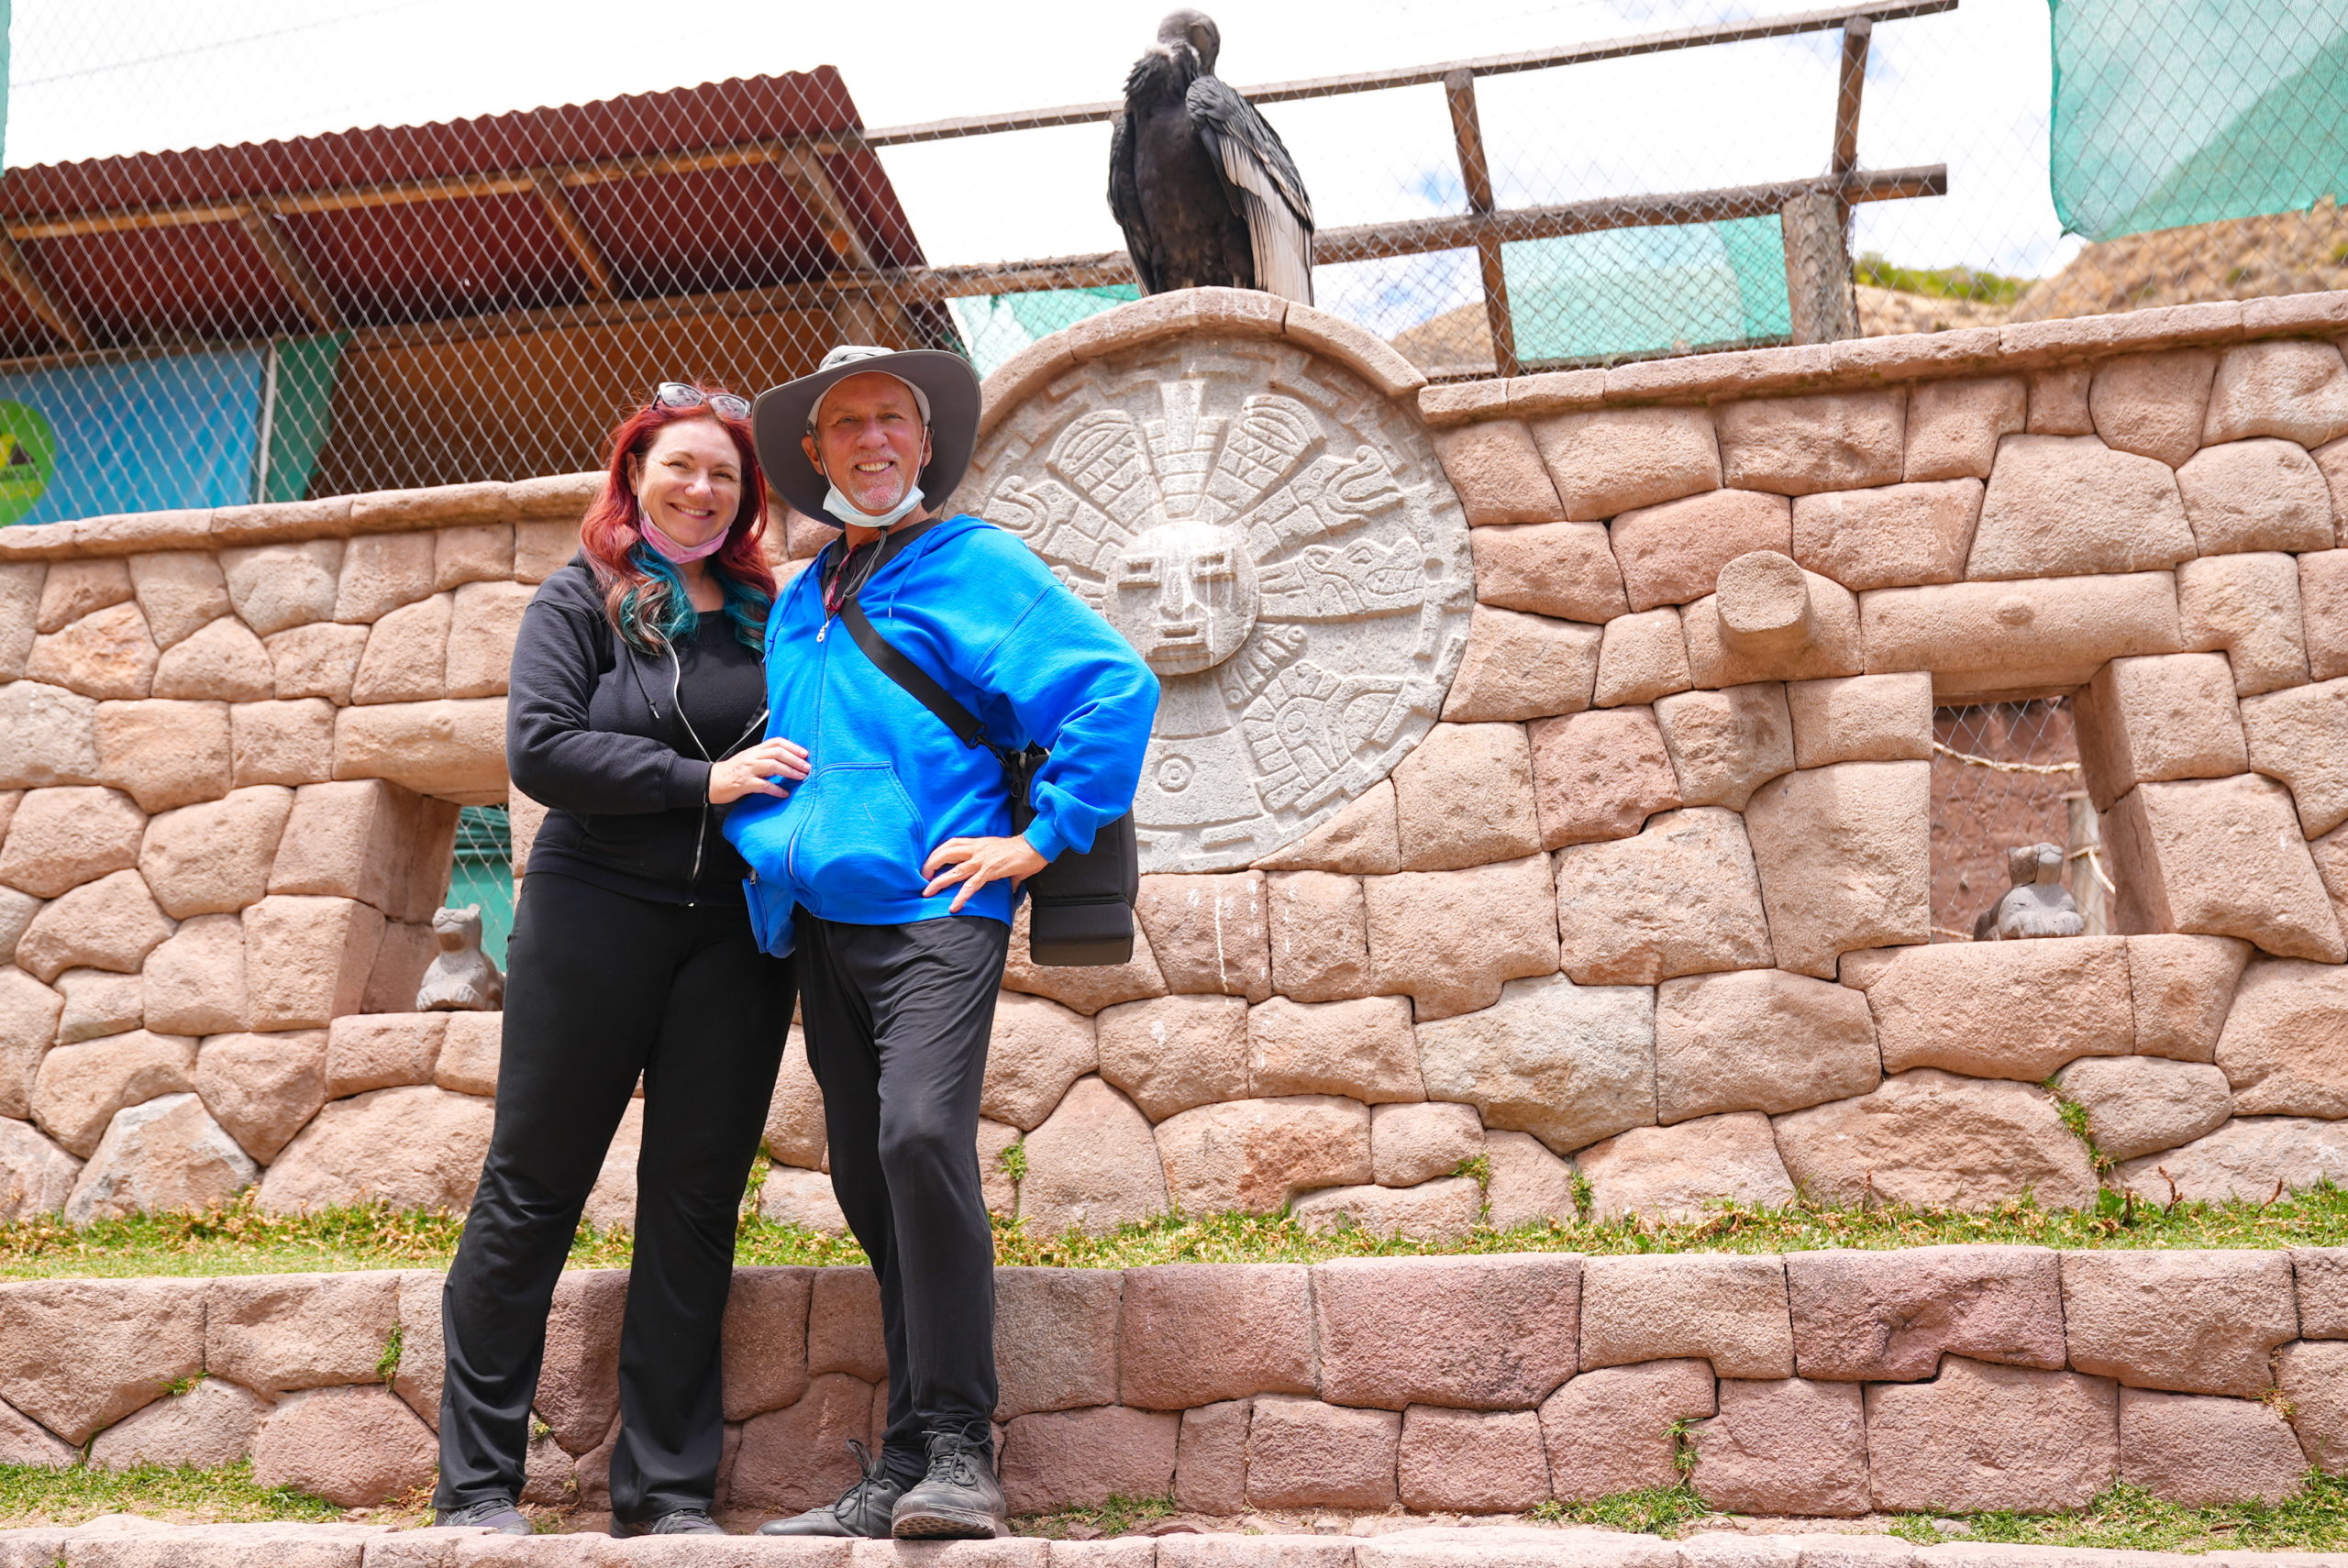 Condors, Incas, and us.